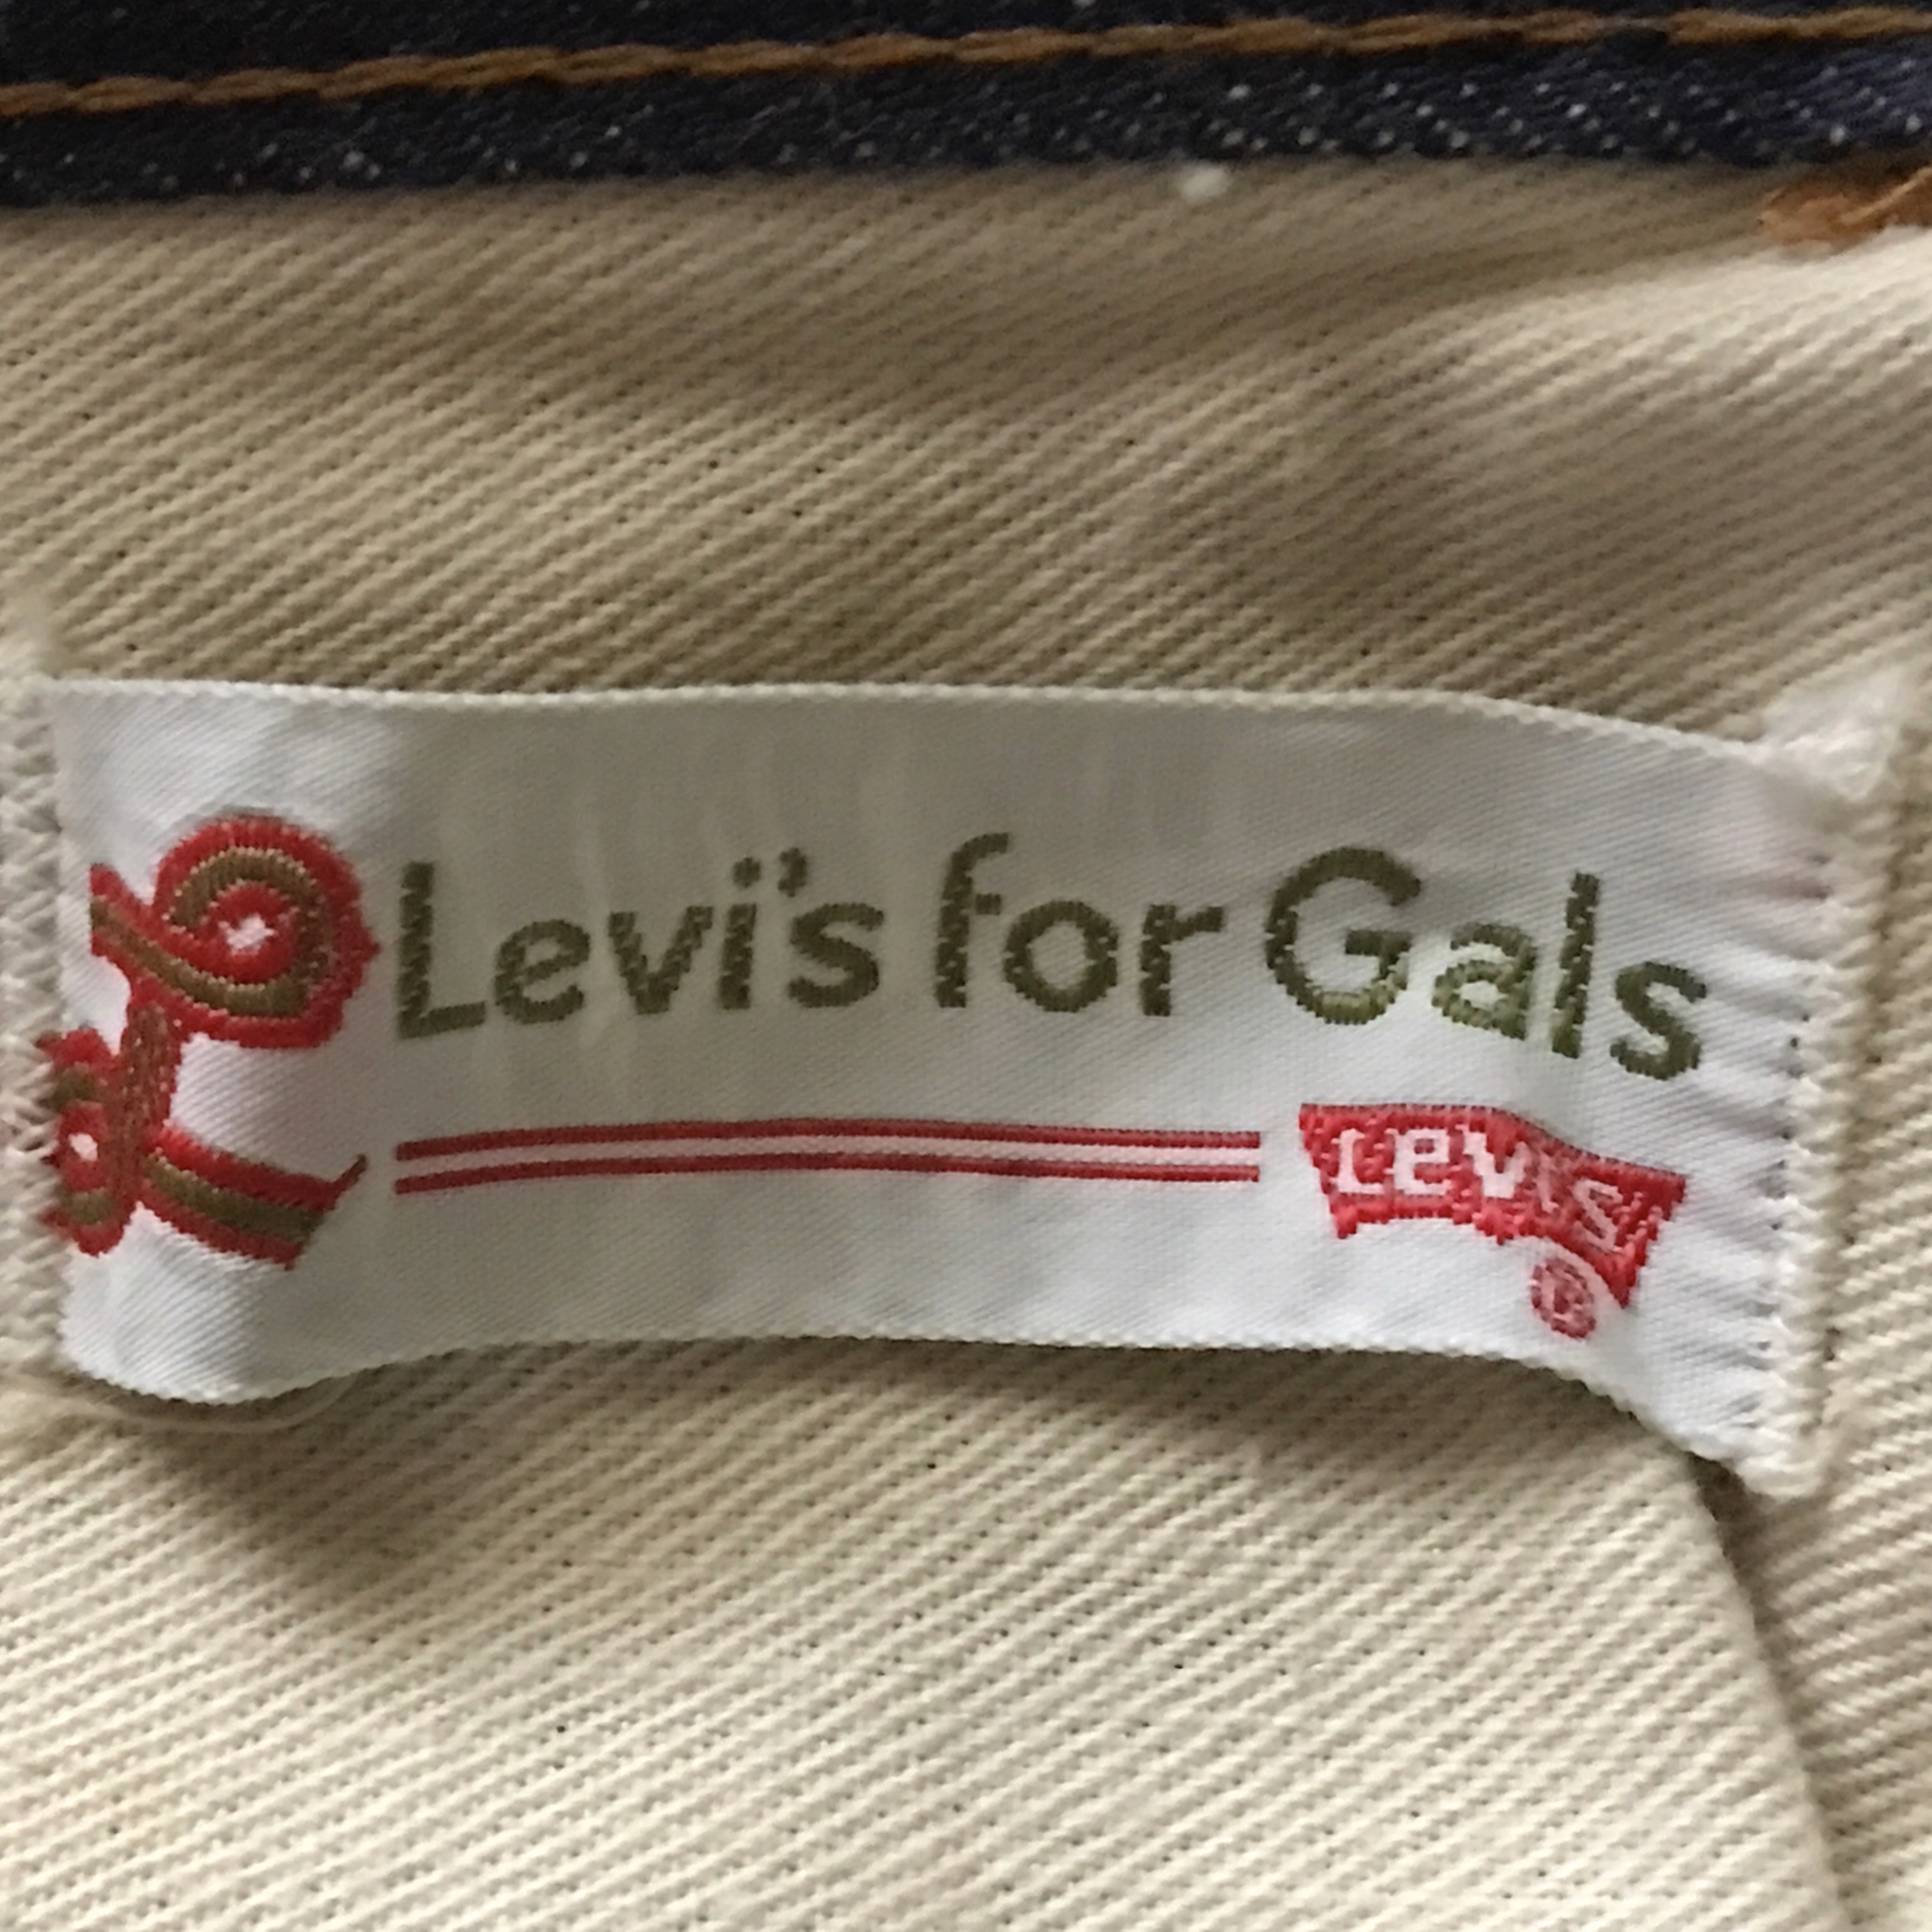 【デニム用語】 Levi's For Gals